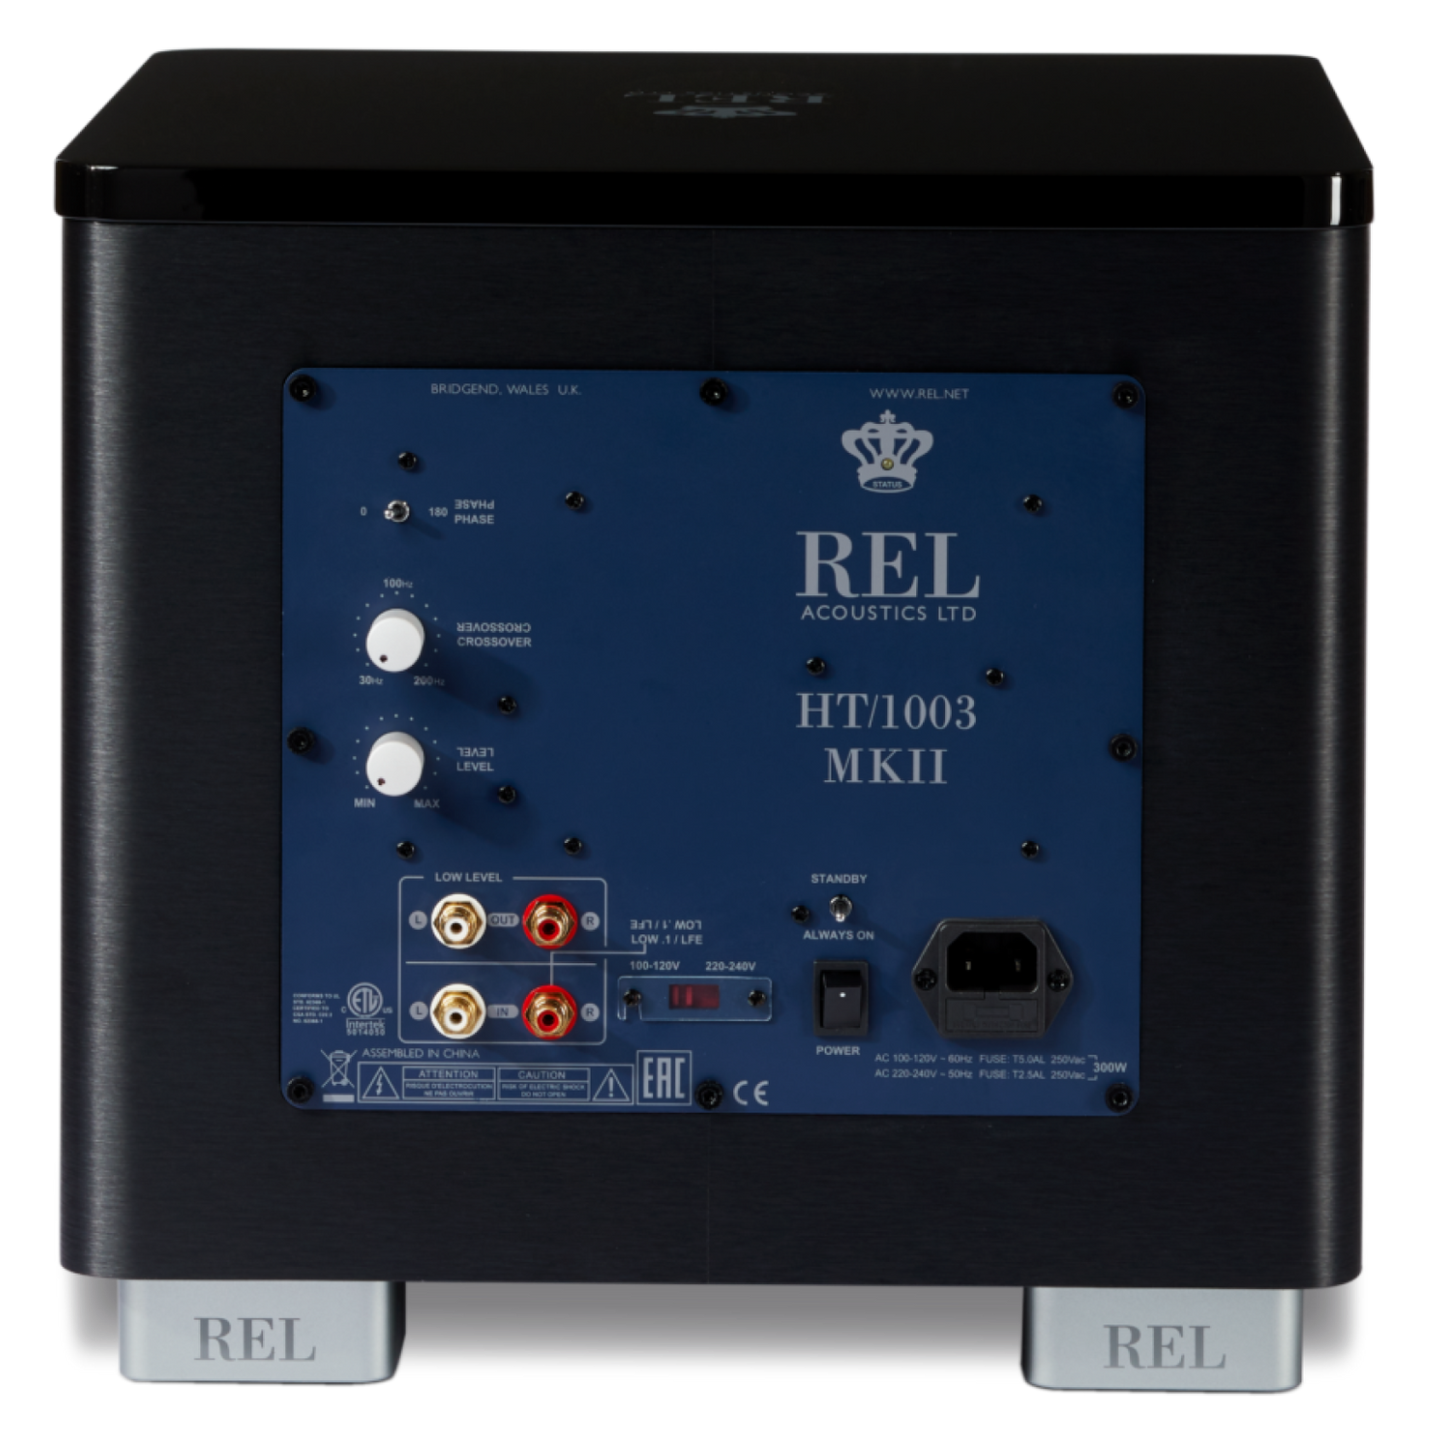 REL Acoustics REL HT/1003 MKII Subwoofer, rear